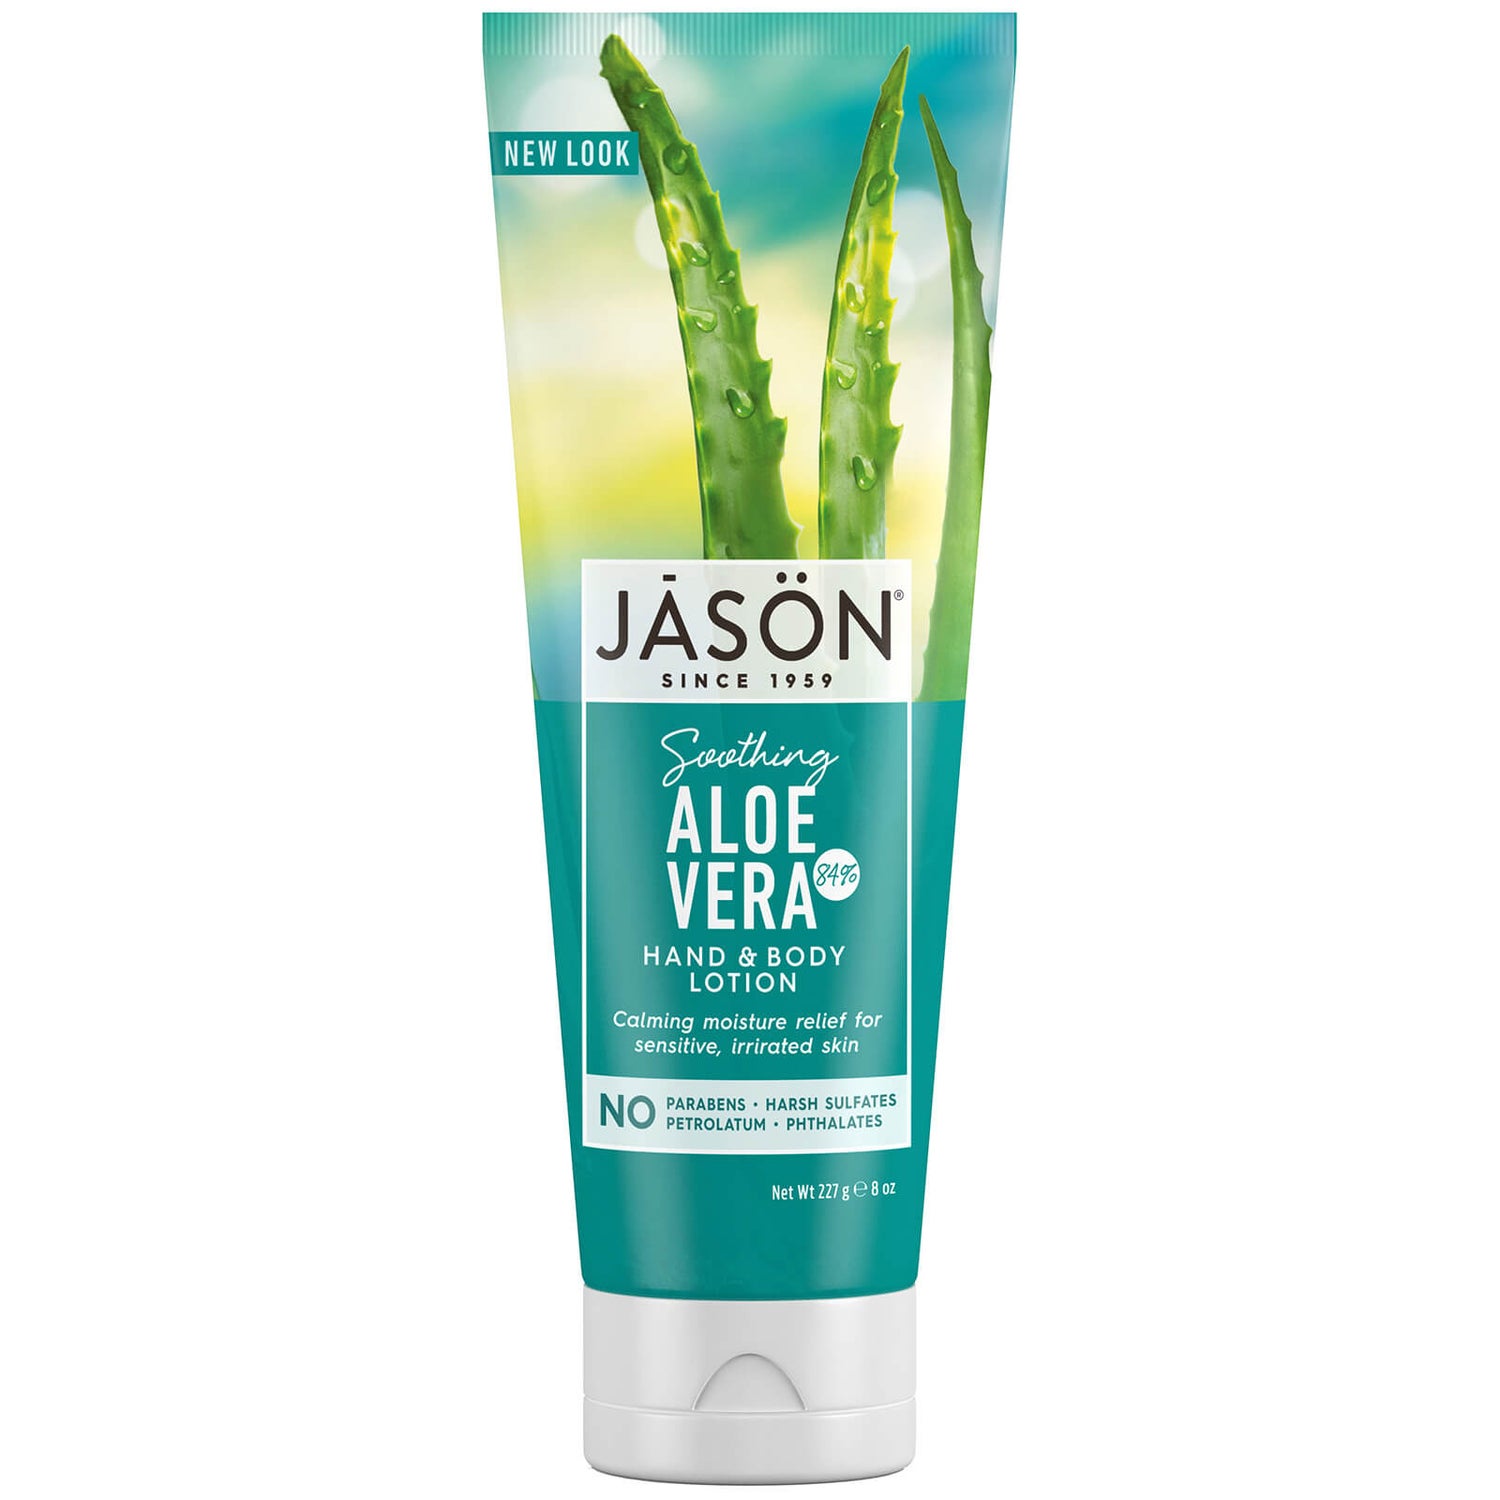 JASON Aloe Vera 84% Hand & Body Lotion 250gr